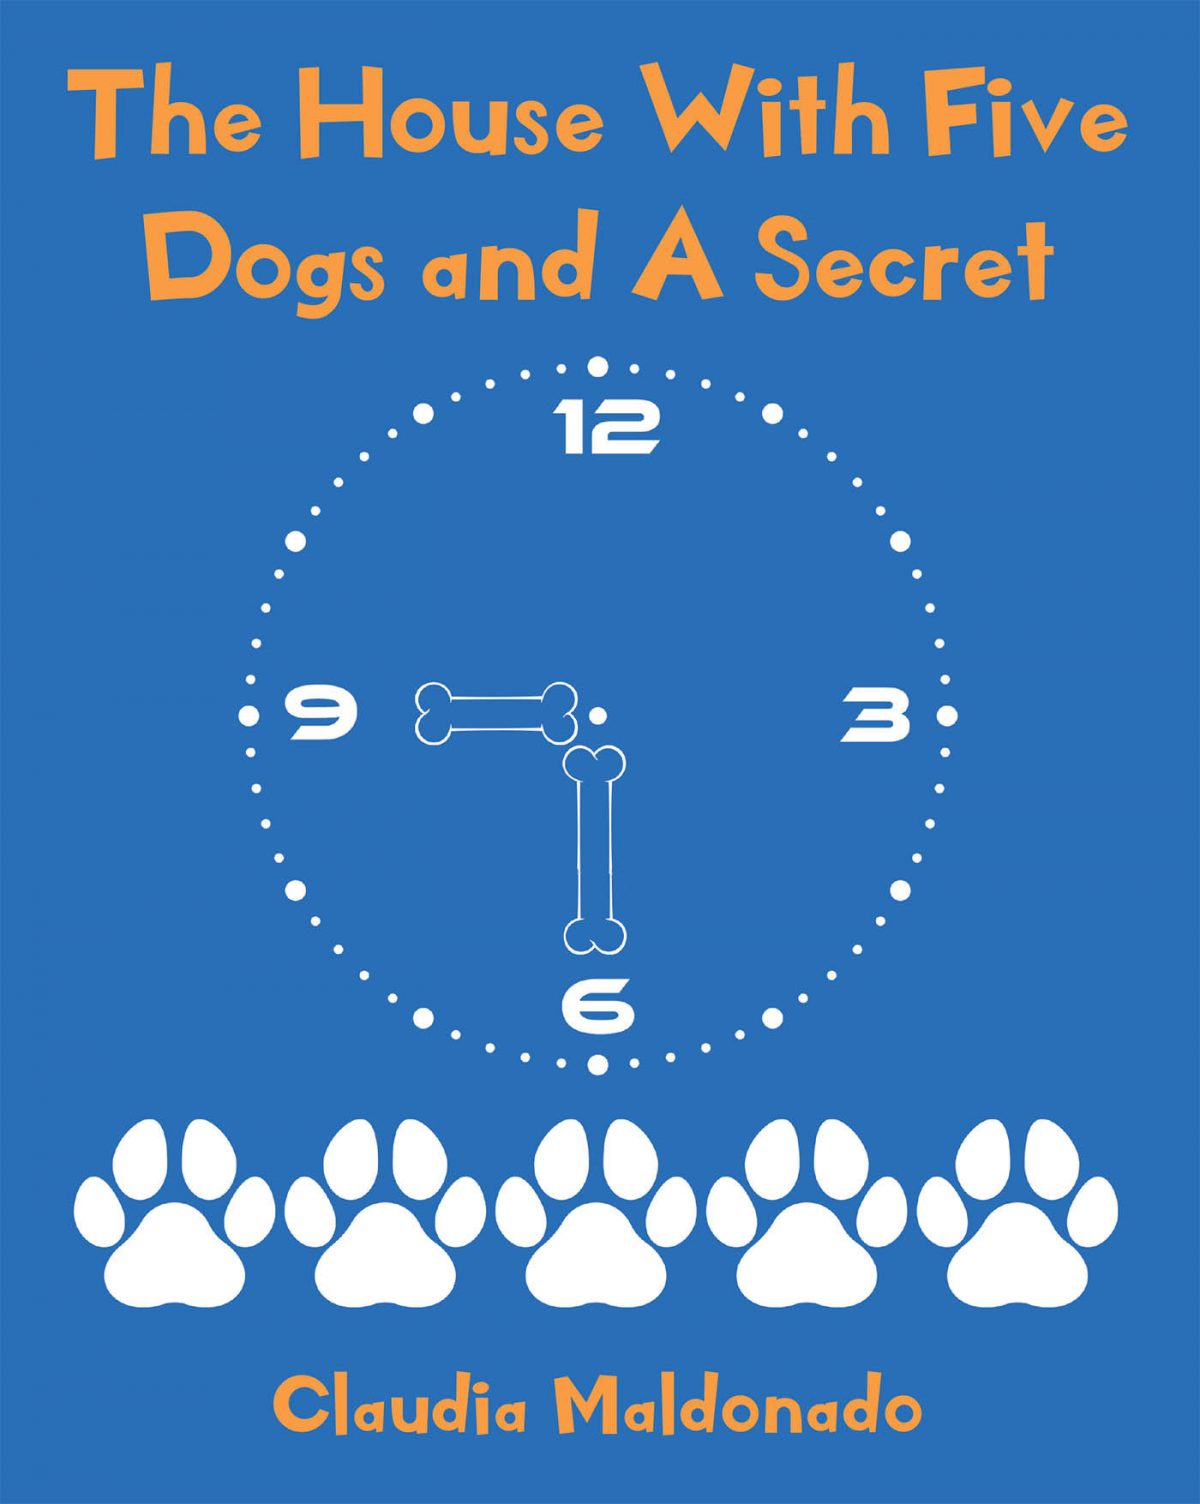 El Nuevo Libro De Claudia Maldonado, The House With 5 Dogs And A Secret, Una Fantástica Obra Donde Los Niños Se Divertirán